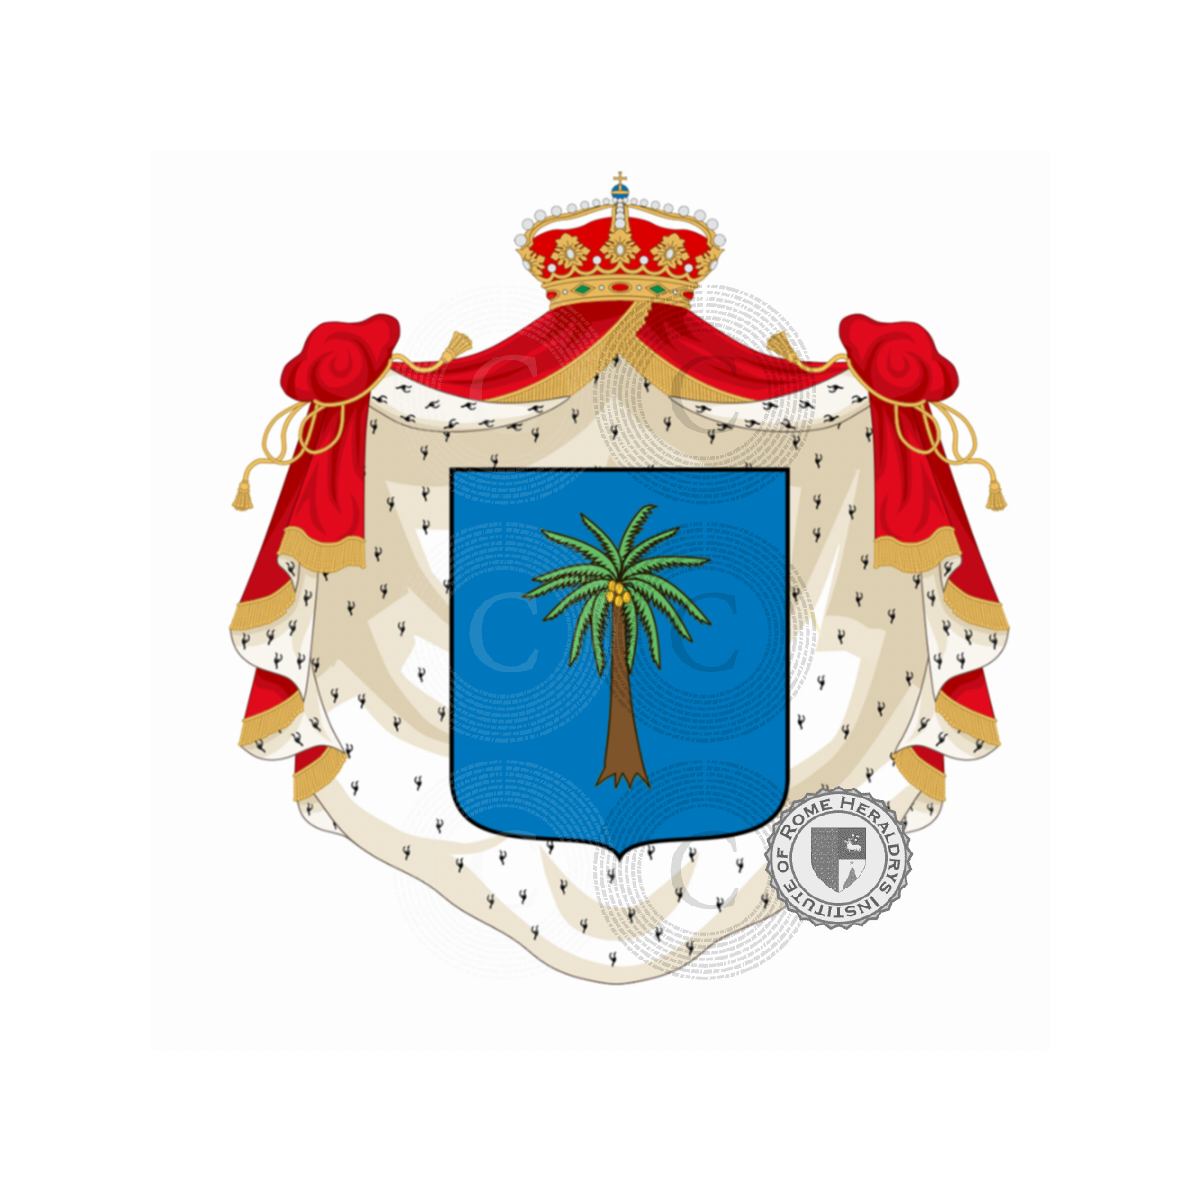 Escudo de la familiaTagliavia d'Aragona, Tagliavia d'Aragona